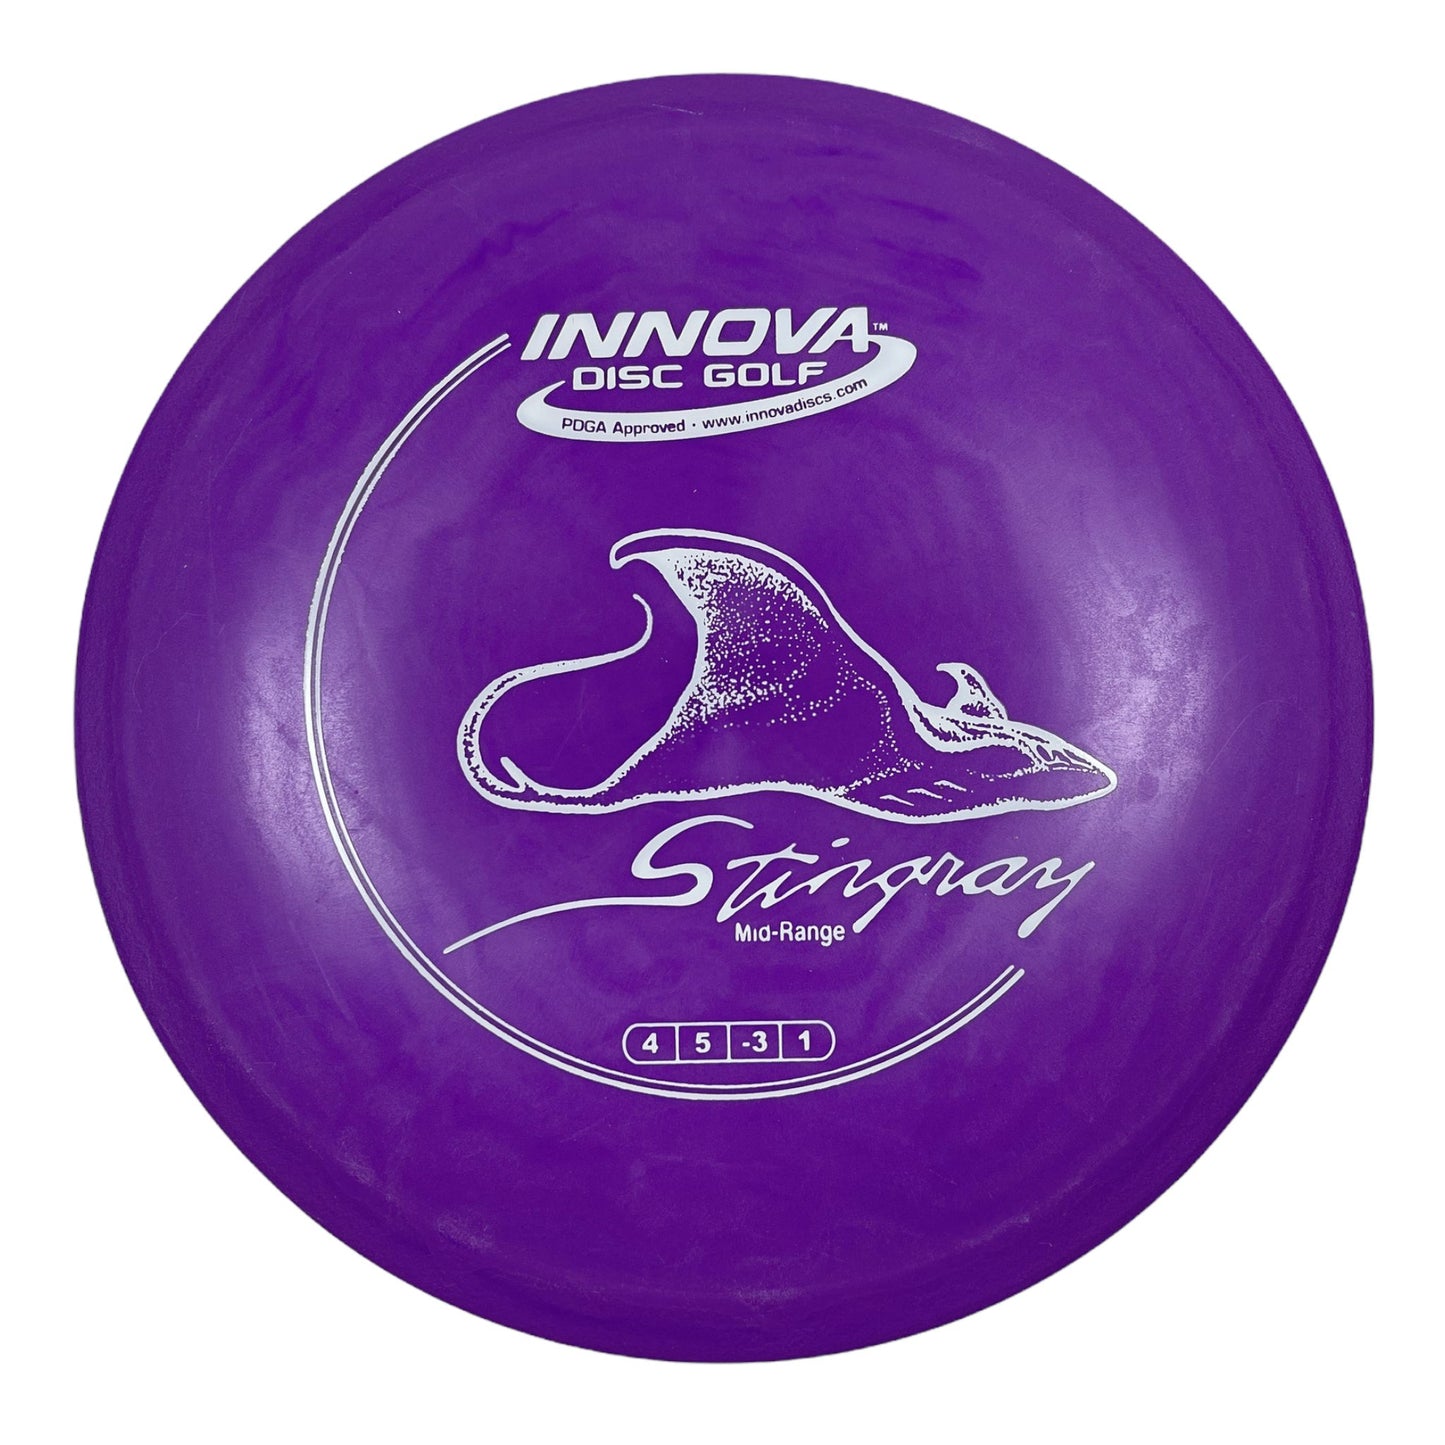 Innova Champion Discs Stingray | DX | Purple/White 174g Disc Golf